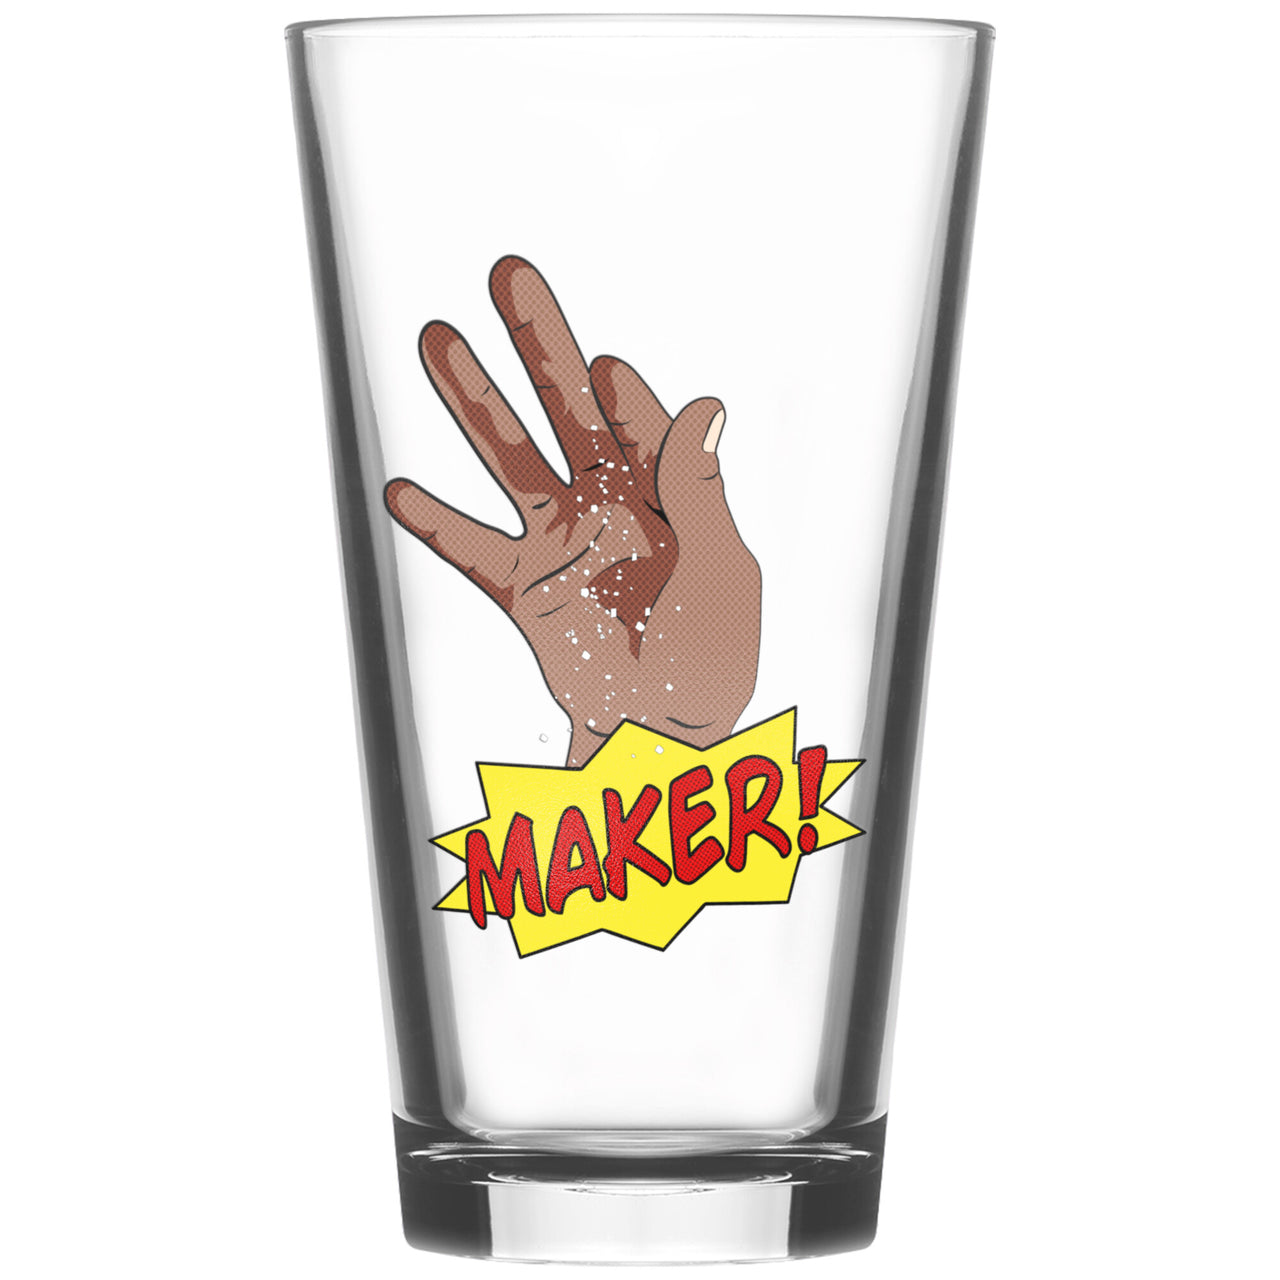 Maker Pint Glass